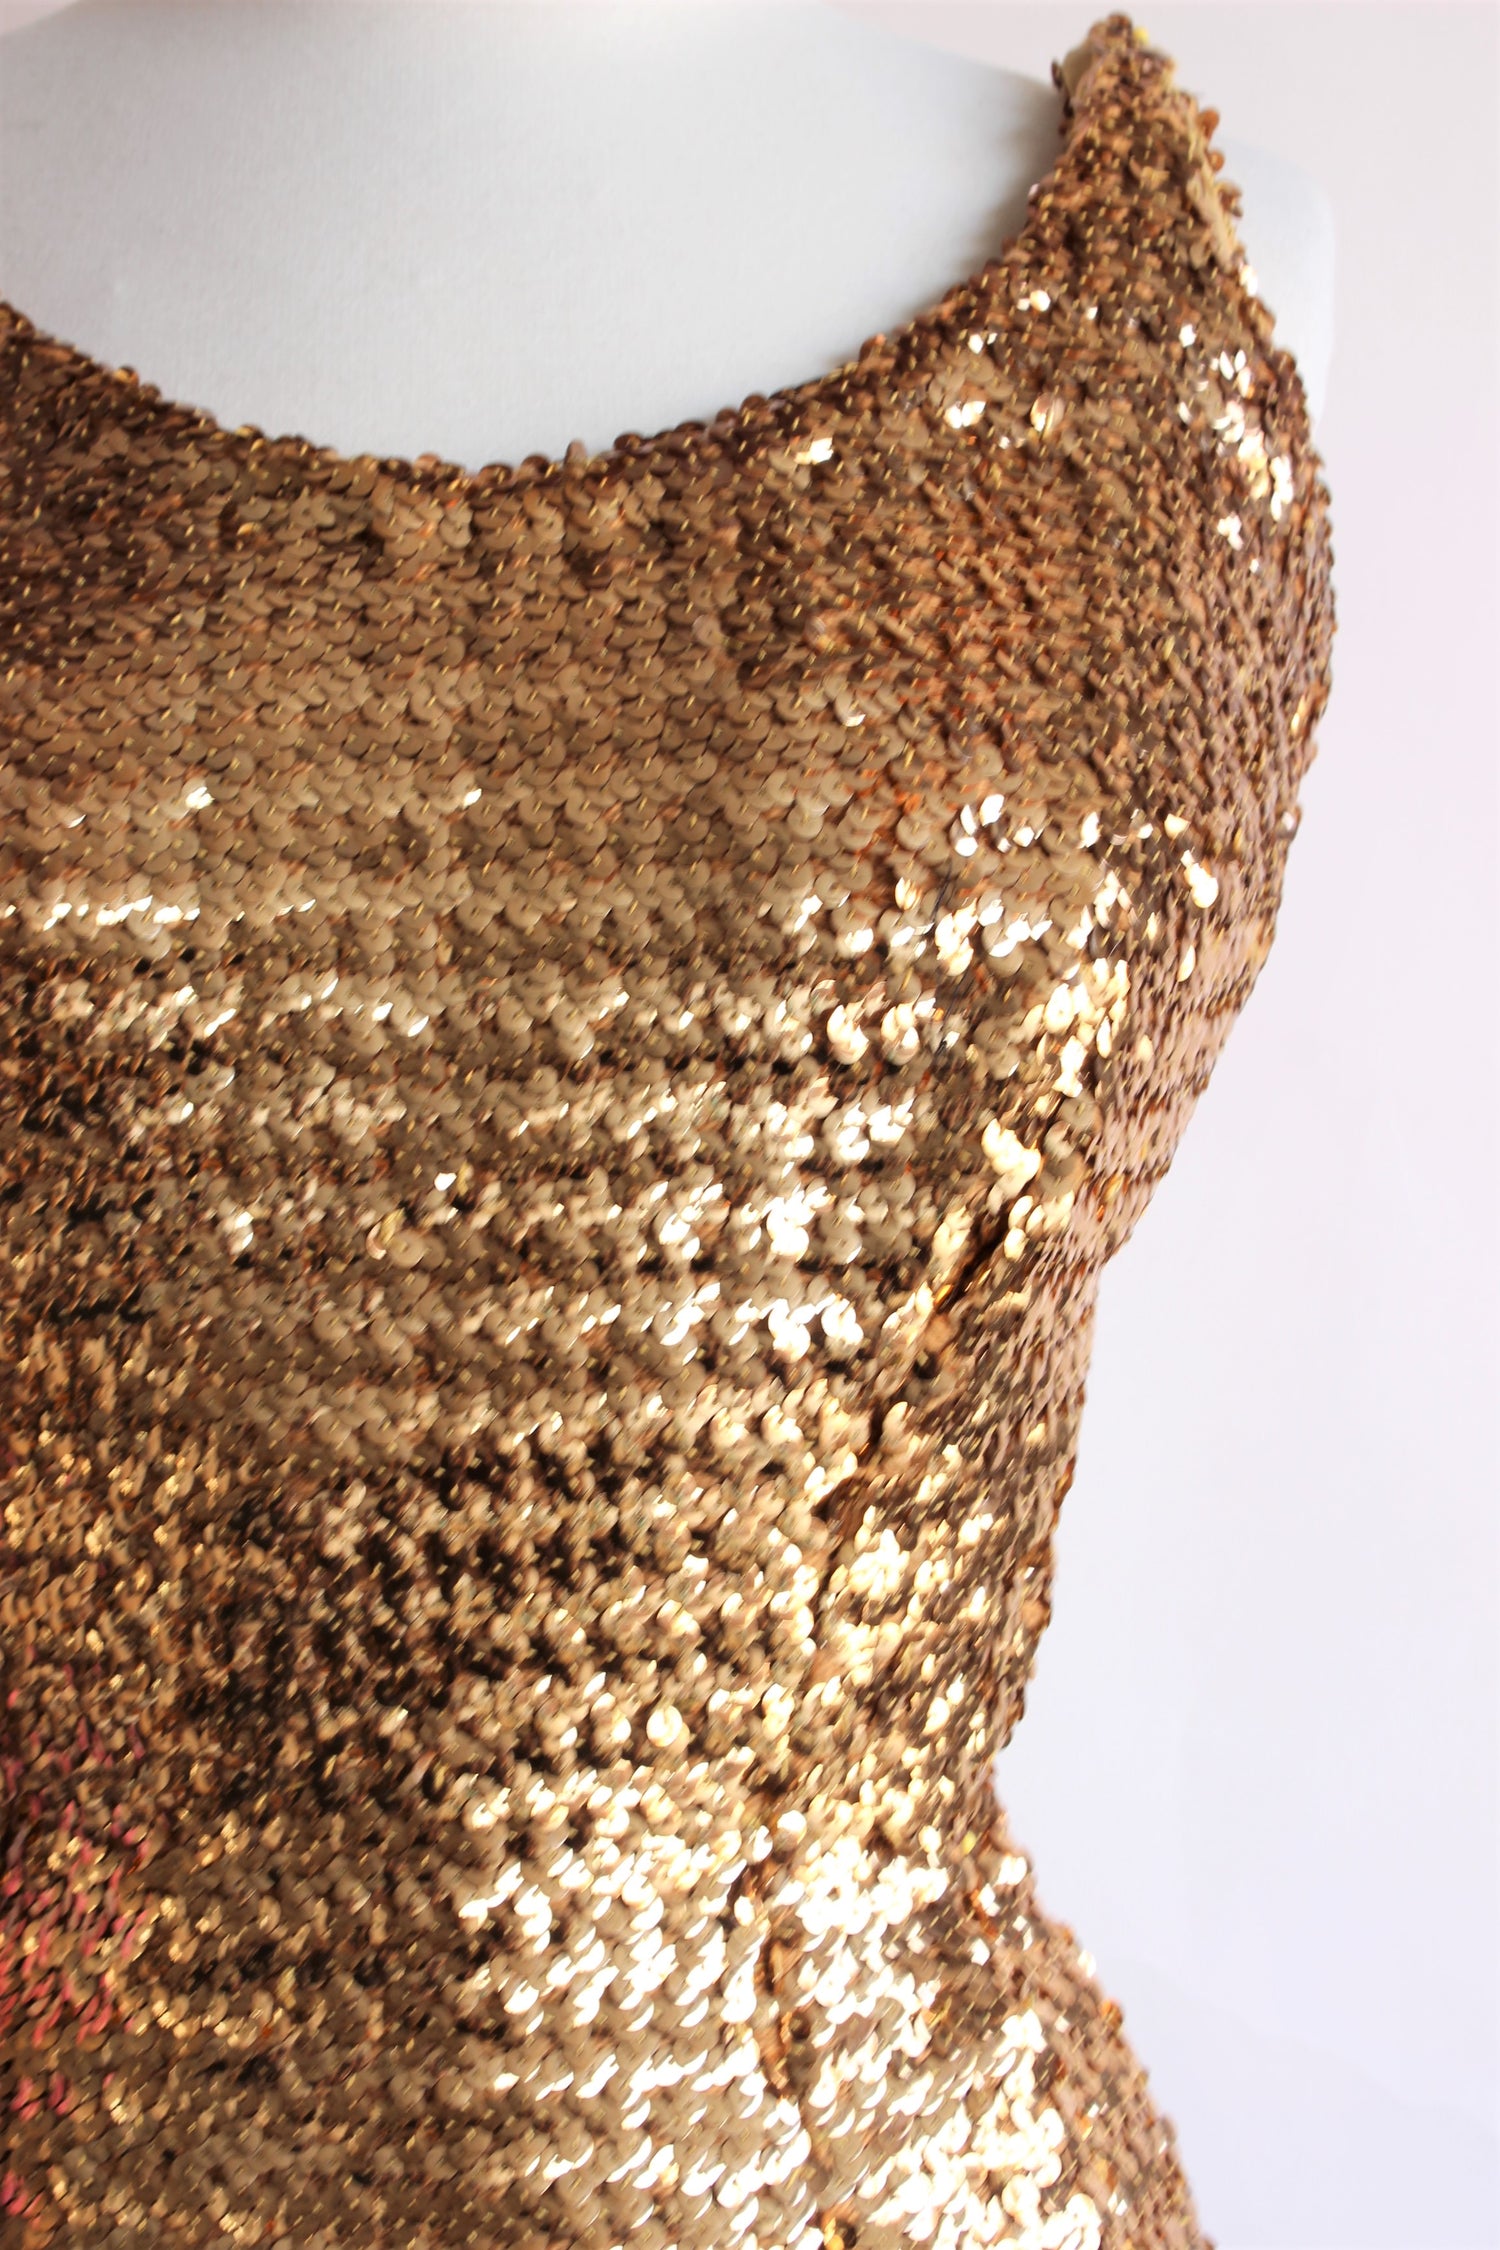 Vintage 1950s Gold Sequin Wiggle Dress